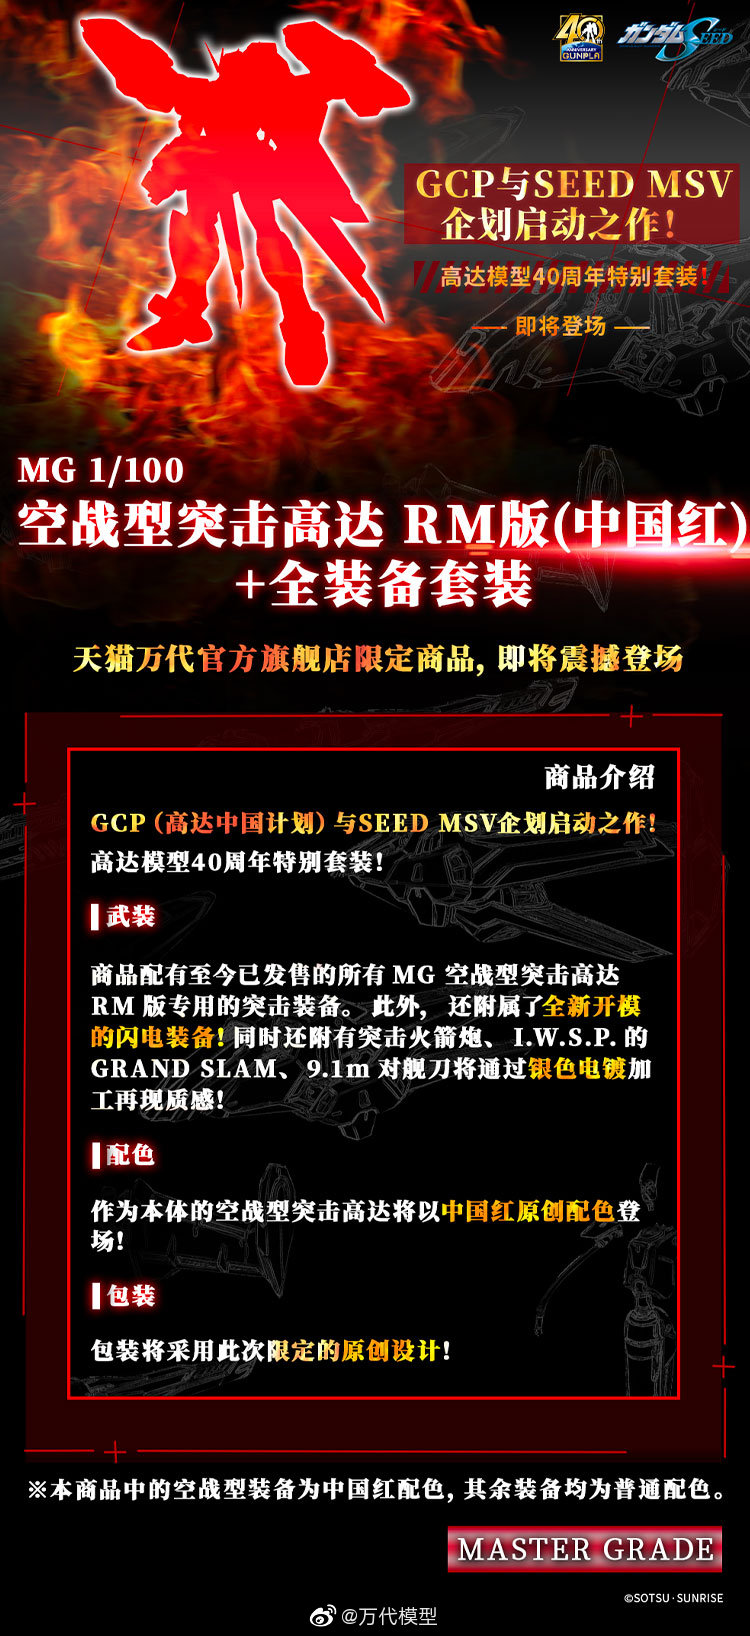 万代11月1日上线 MG 1/100 中国红空战型突击高达+全装备套装 售价1150元